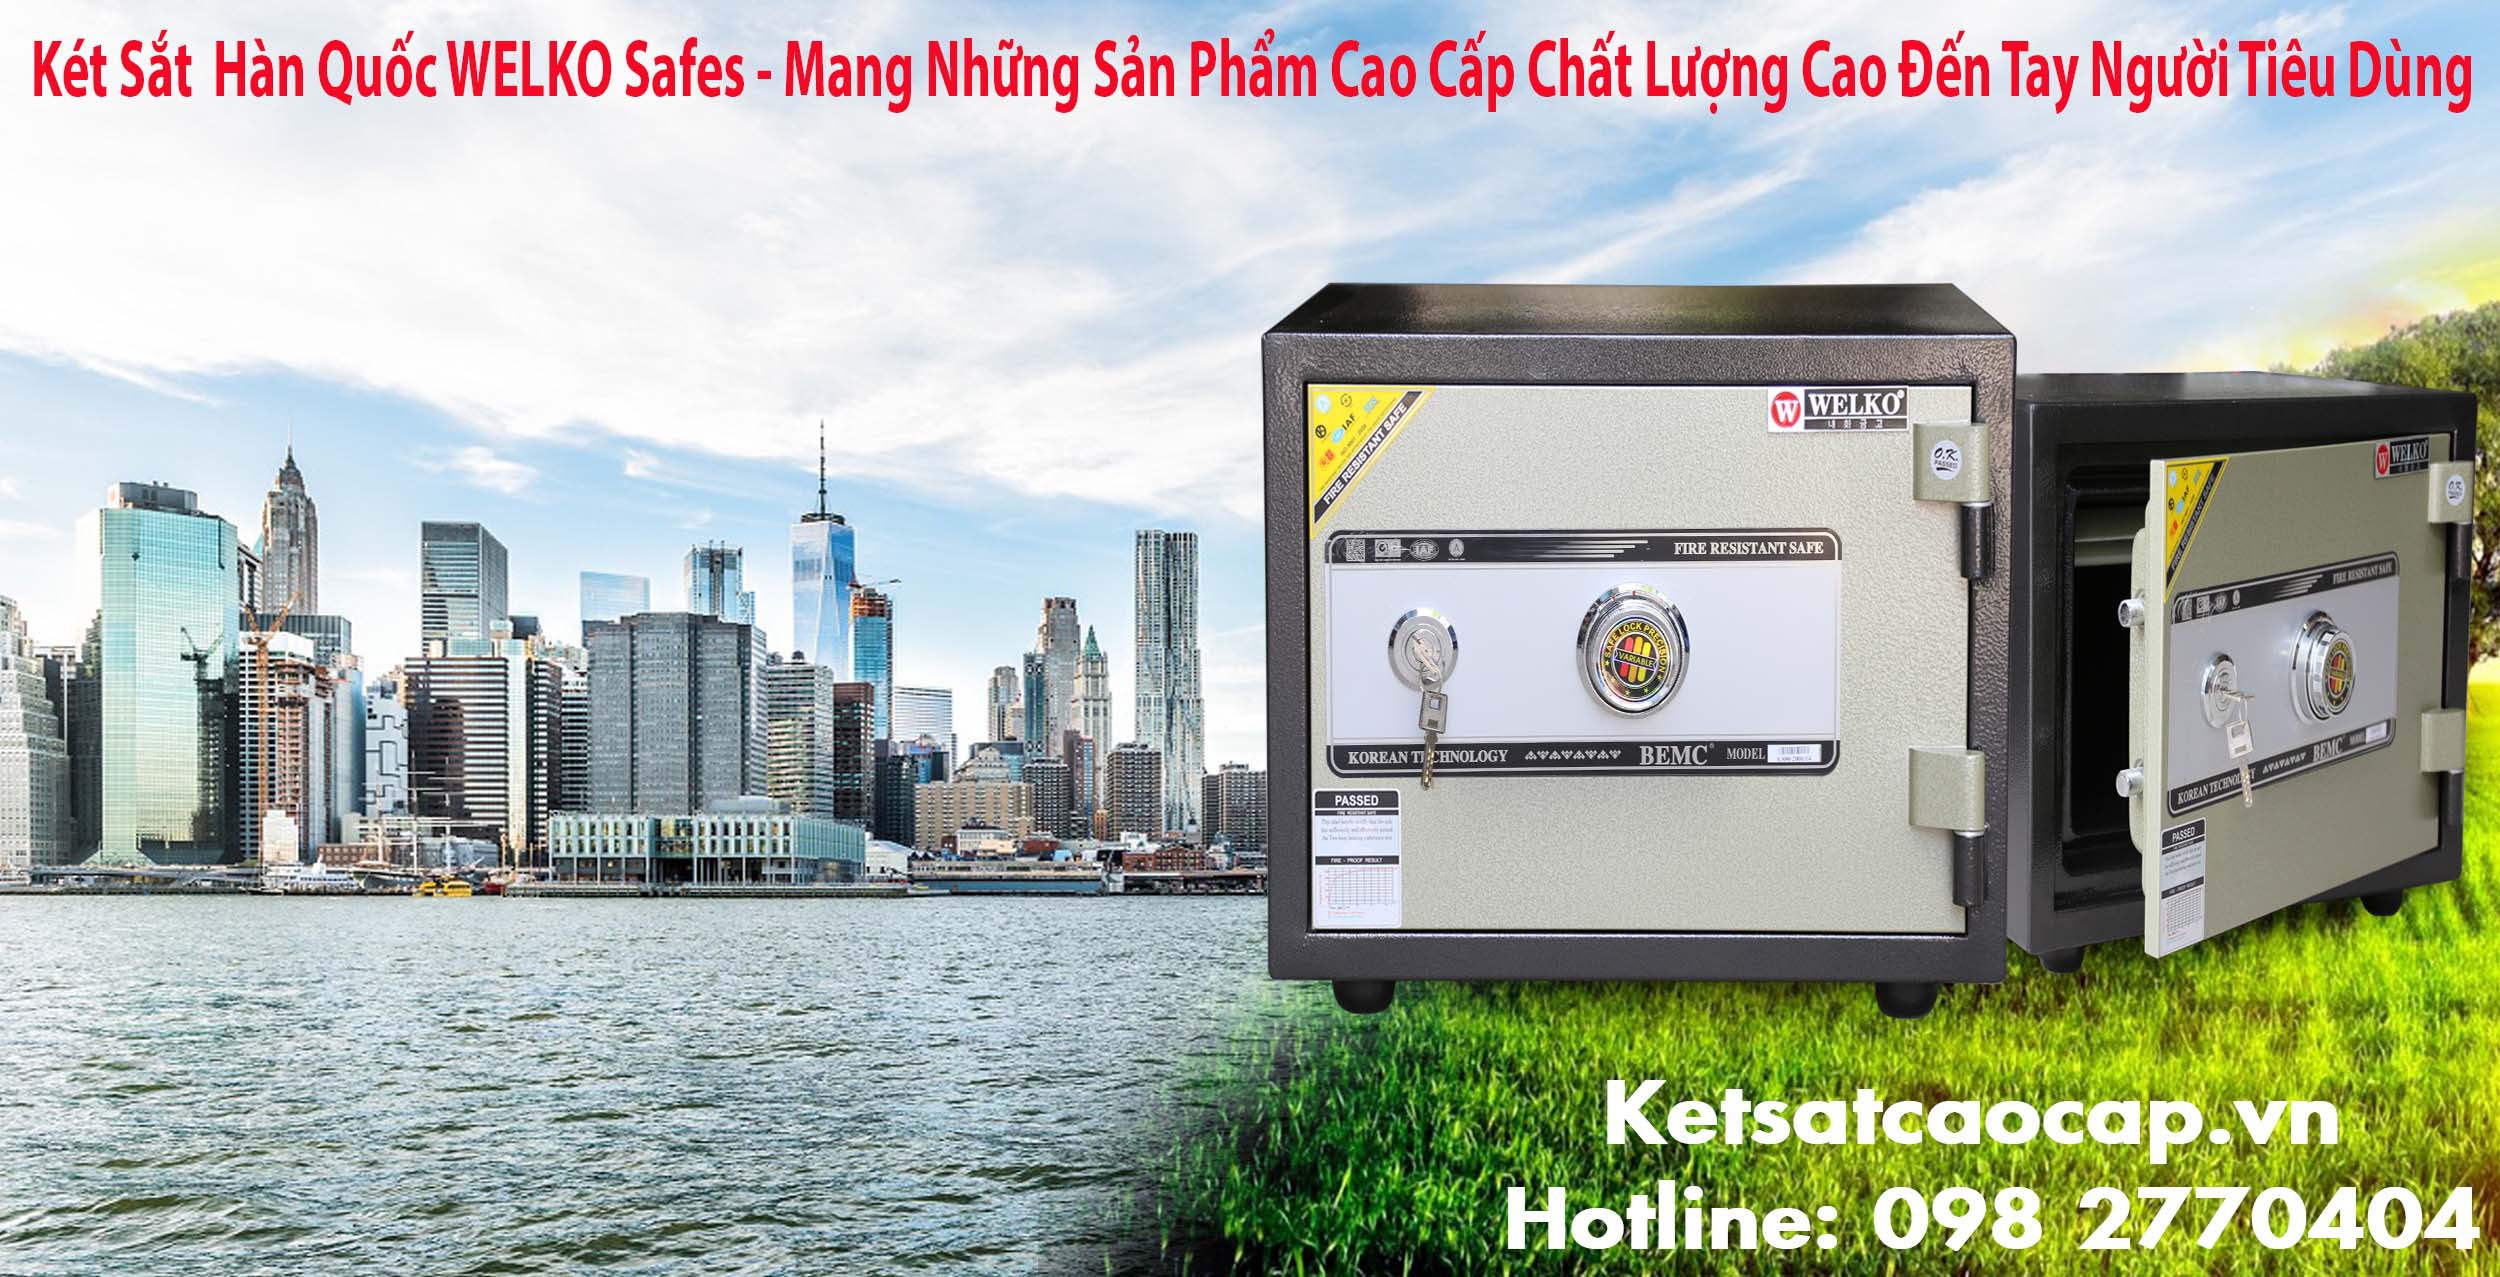 hình ảnh sản phẩm cửa hàng Két Sắt Bảo Mật cung cấp két sắt giá rẻ chất lượng cao an toàn uy tín